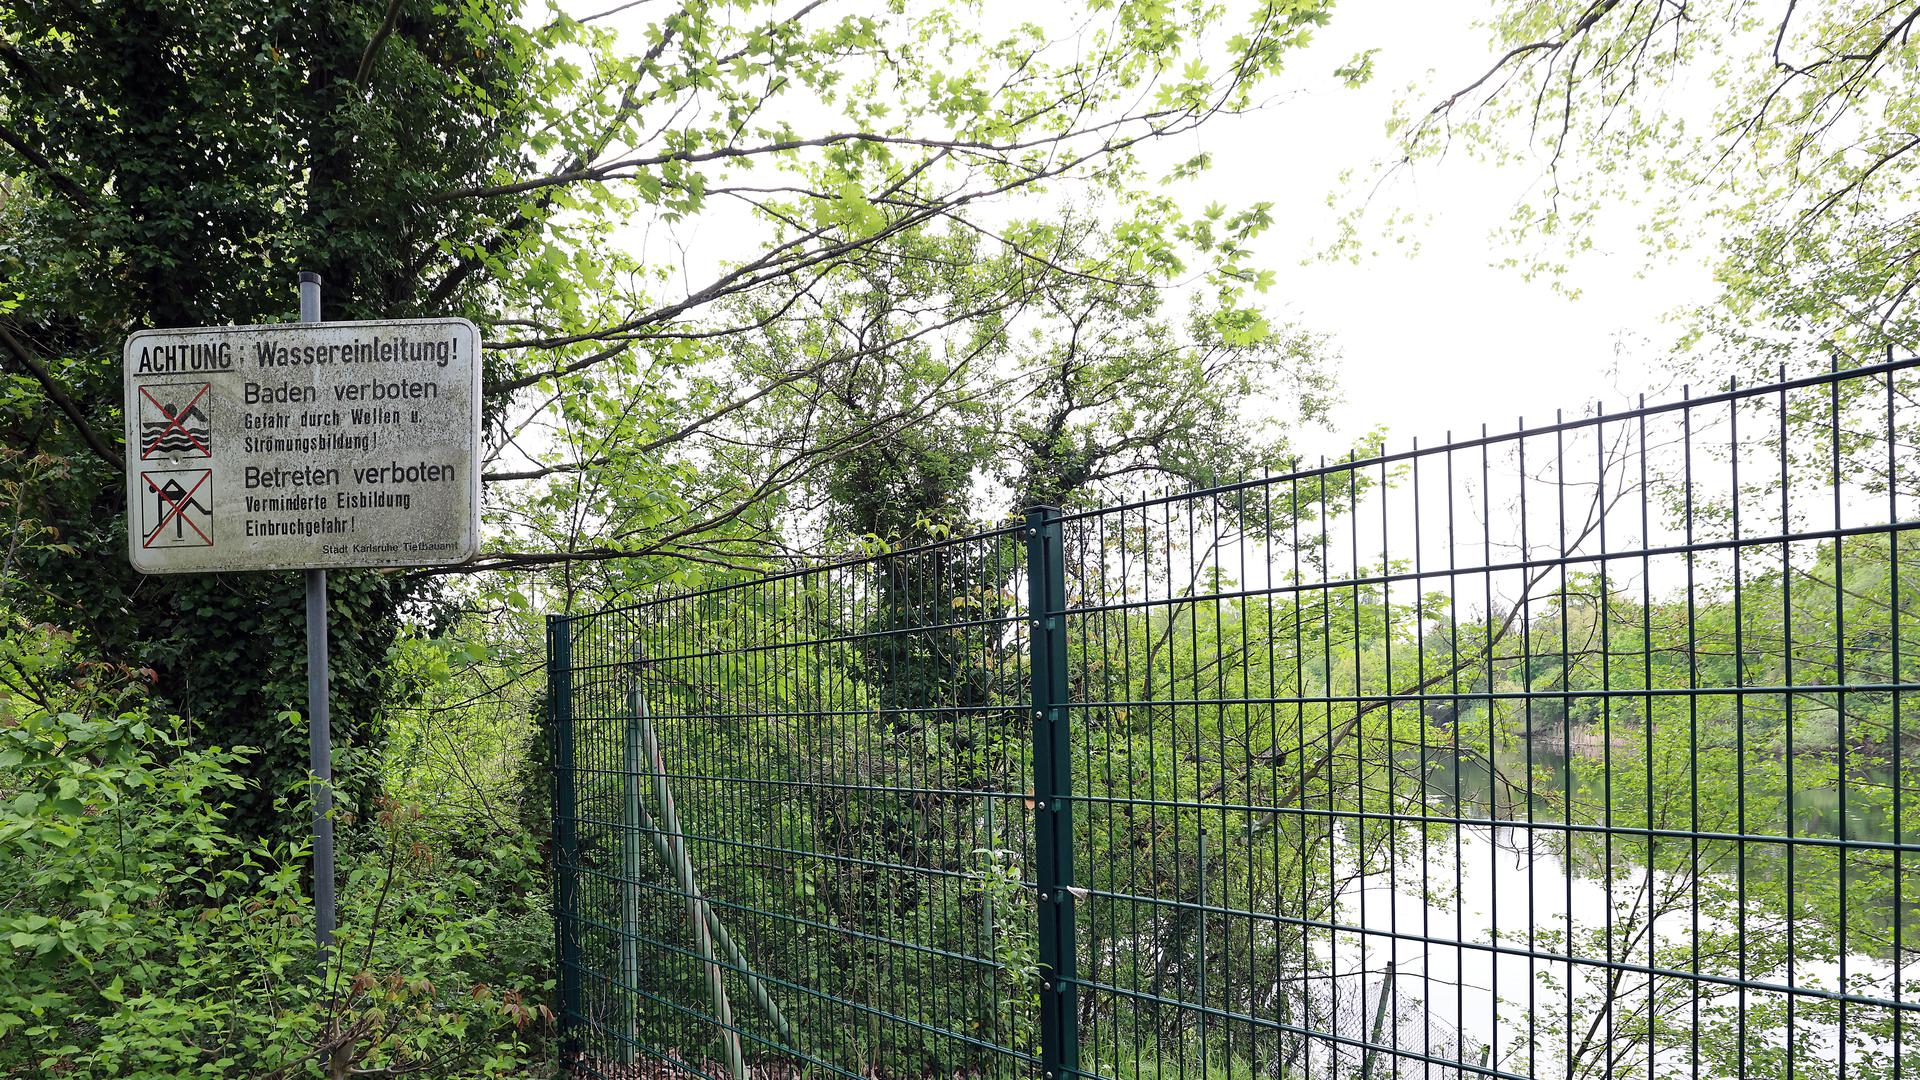 Deutliche Warnung: Das Schild steht am südwestlichen Rand der Jägerhausseen, direkt neben einem Sperrzaun.